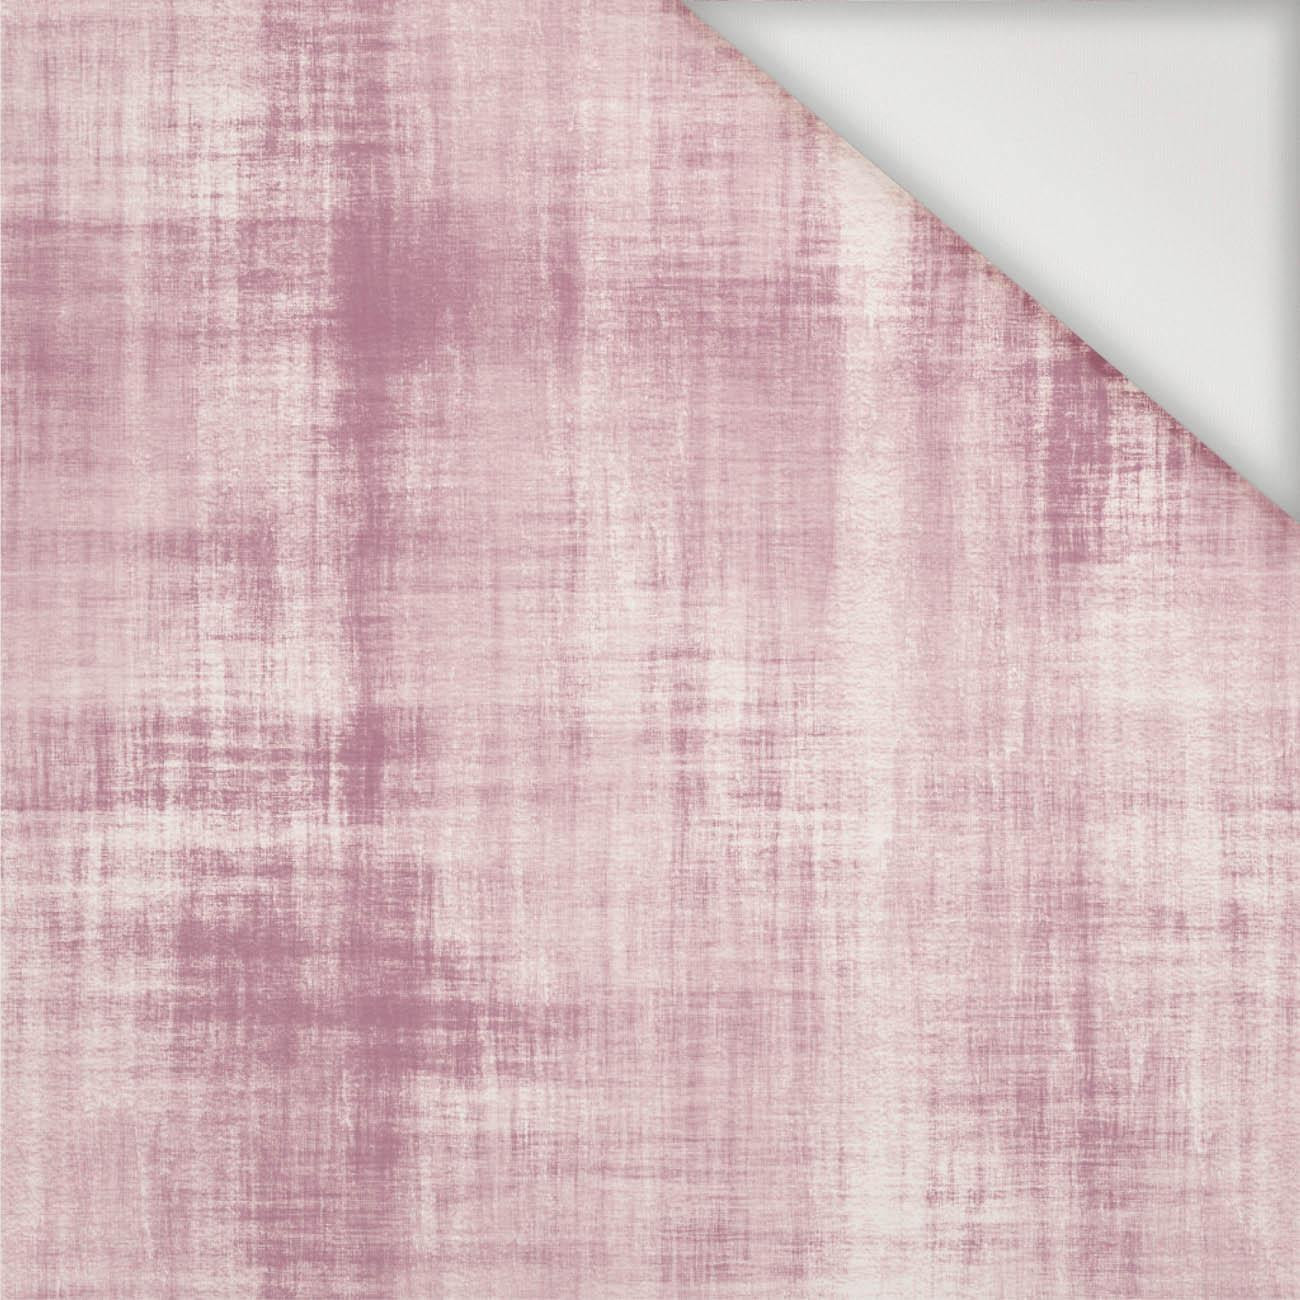 ACID WASH PAT. 2 (rose quartz) - Nylon fabric PUMI